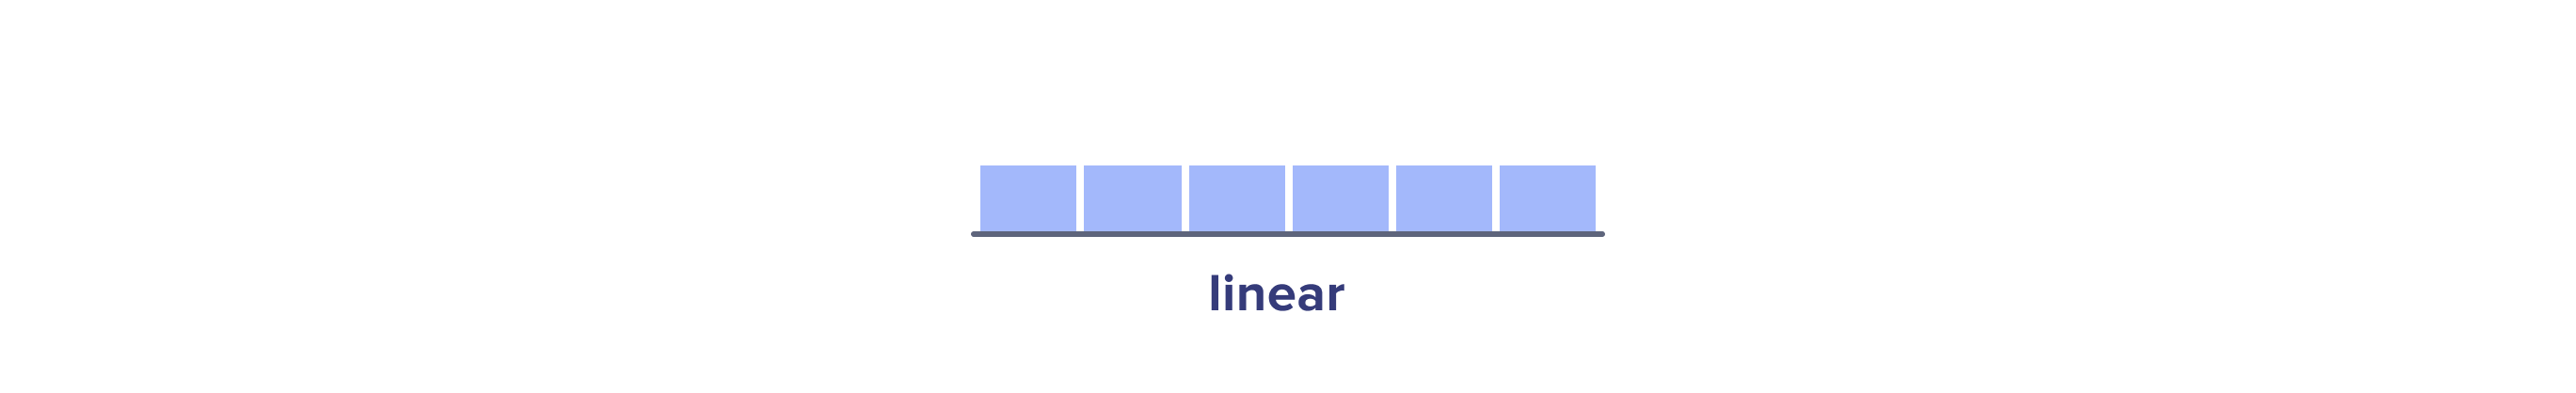 Linear attribution model